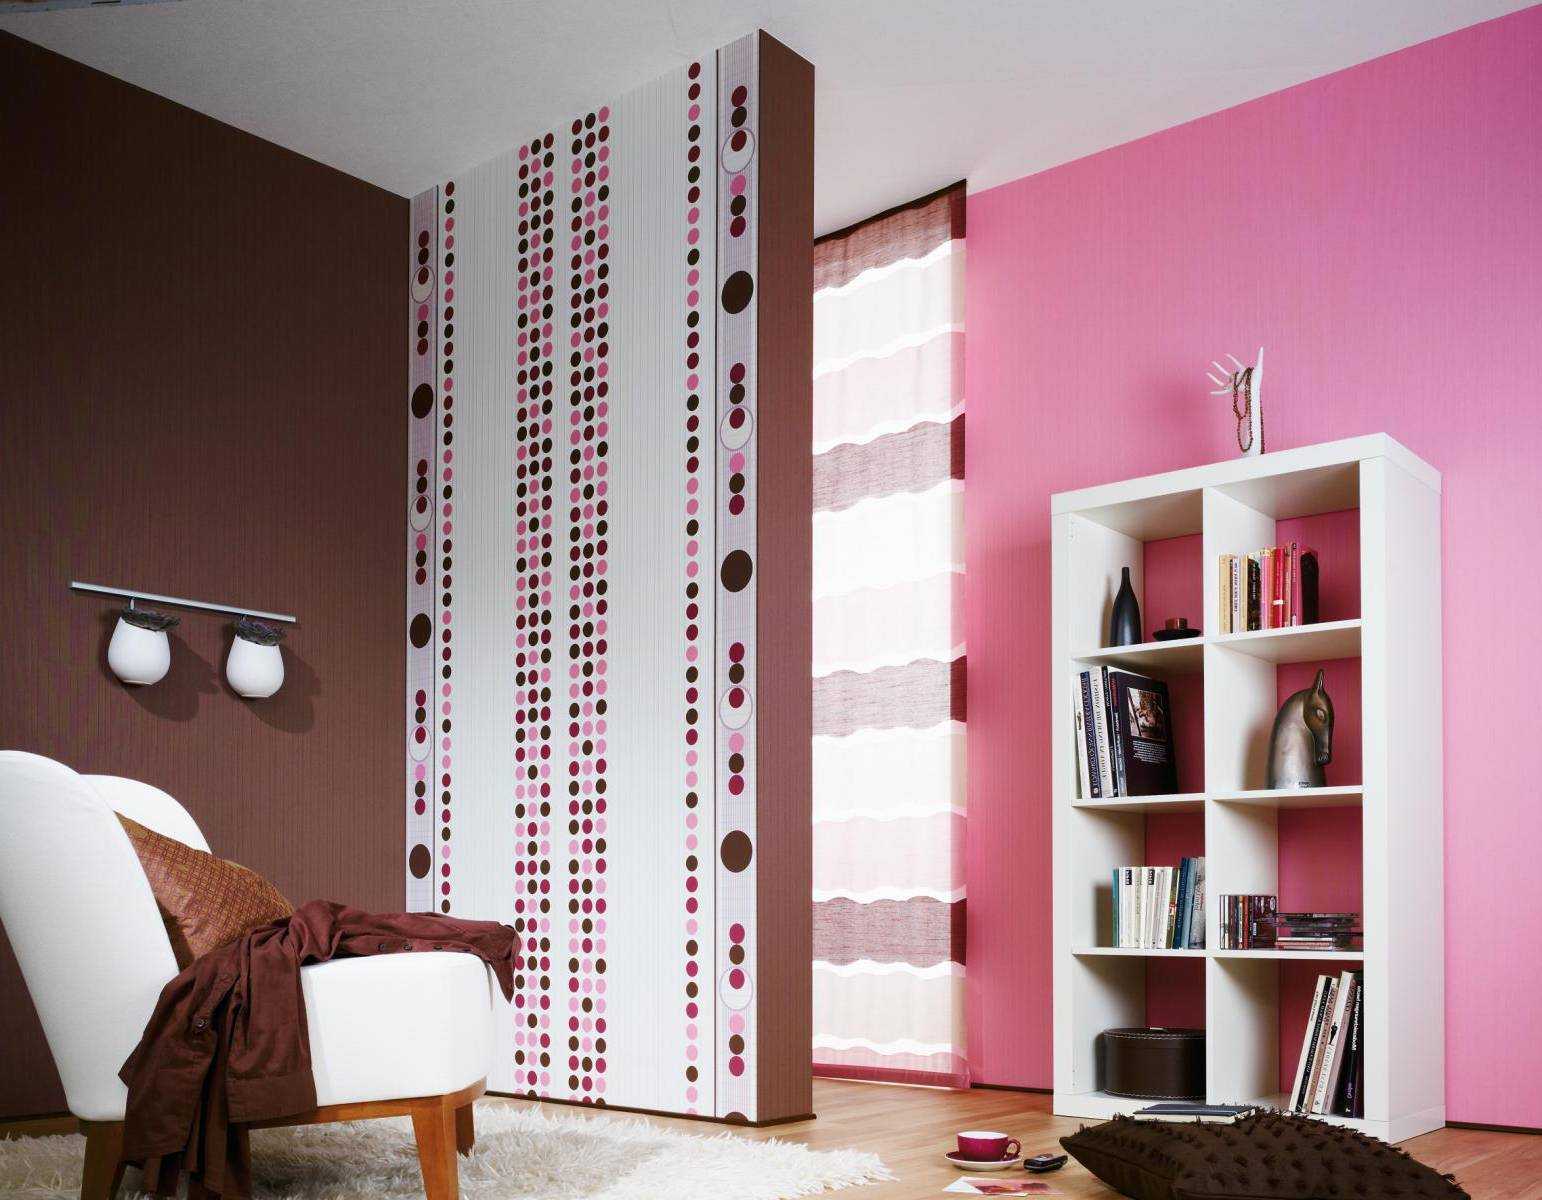 o combinație de roz deschis în stilul camerei cu alte culori